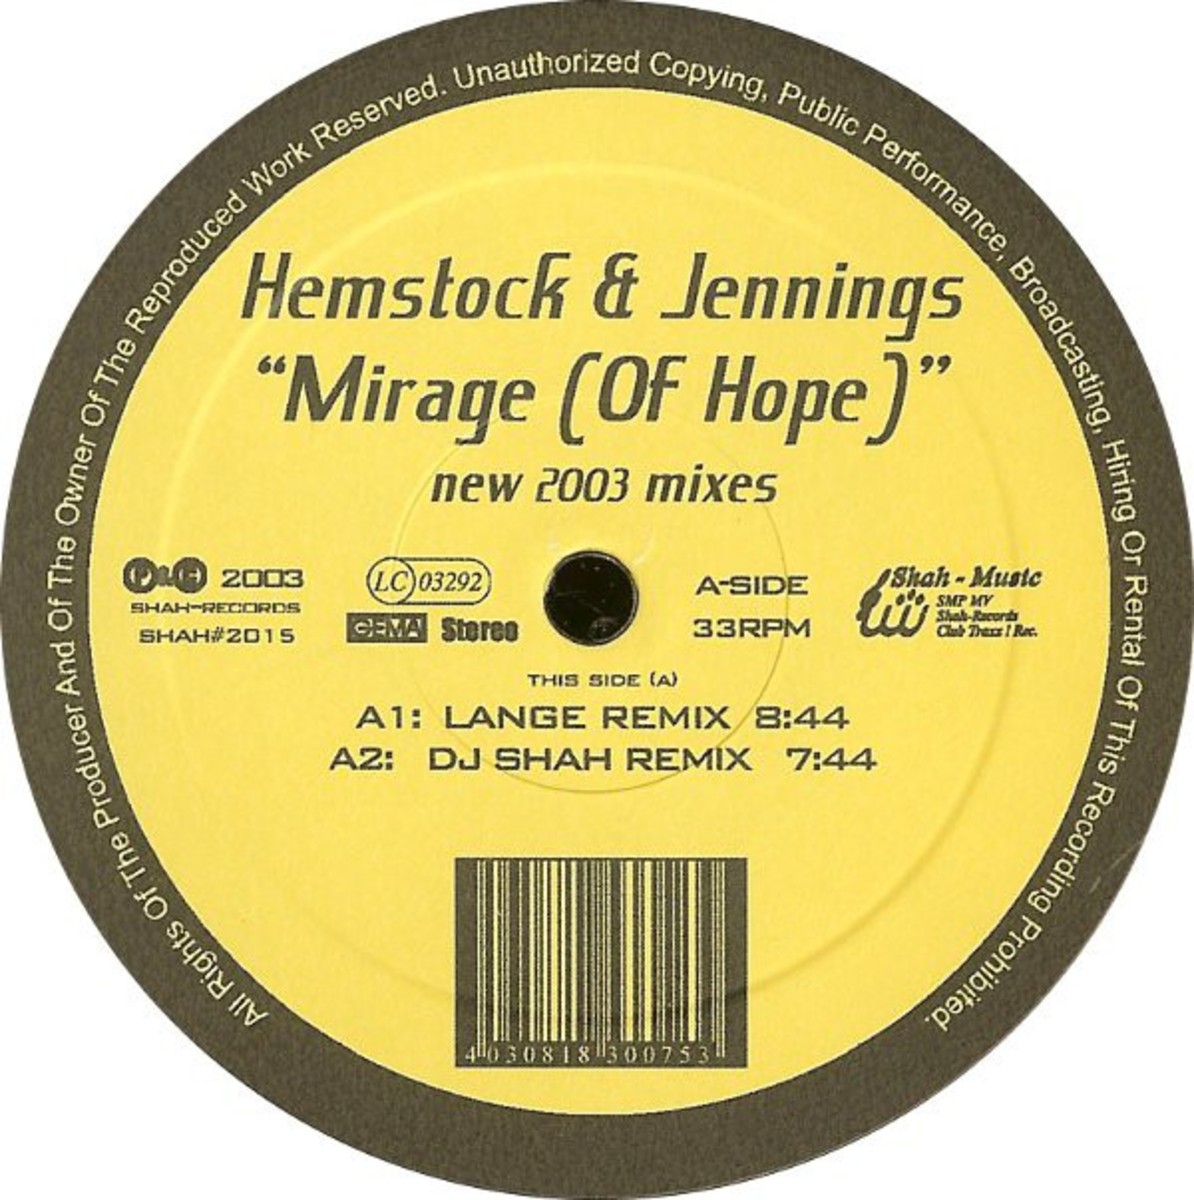 Hemstock & Jennings - Mirage of Hope -mix - Хорошая, приятная, ну грузящая мелодия для души и релаксации фото